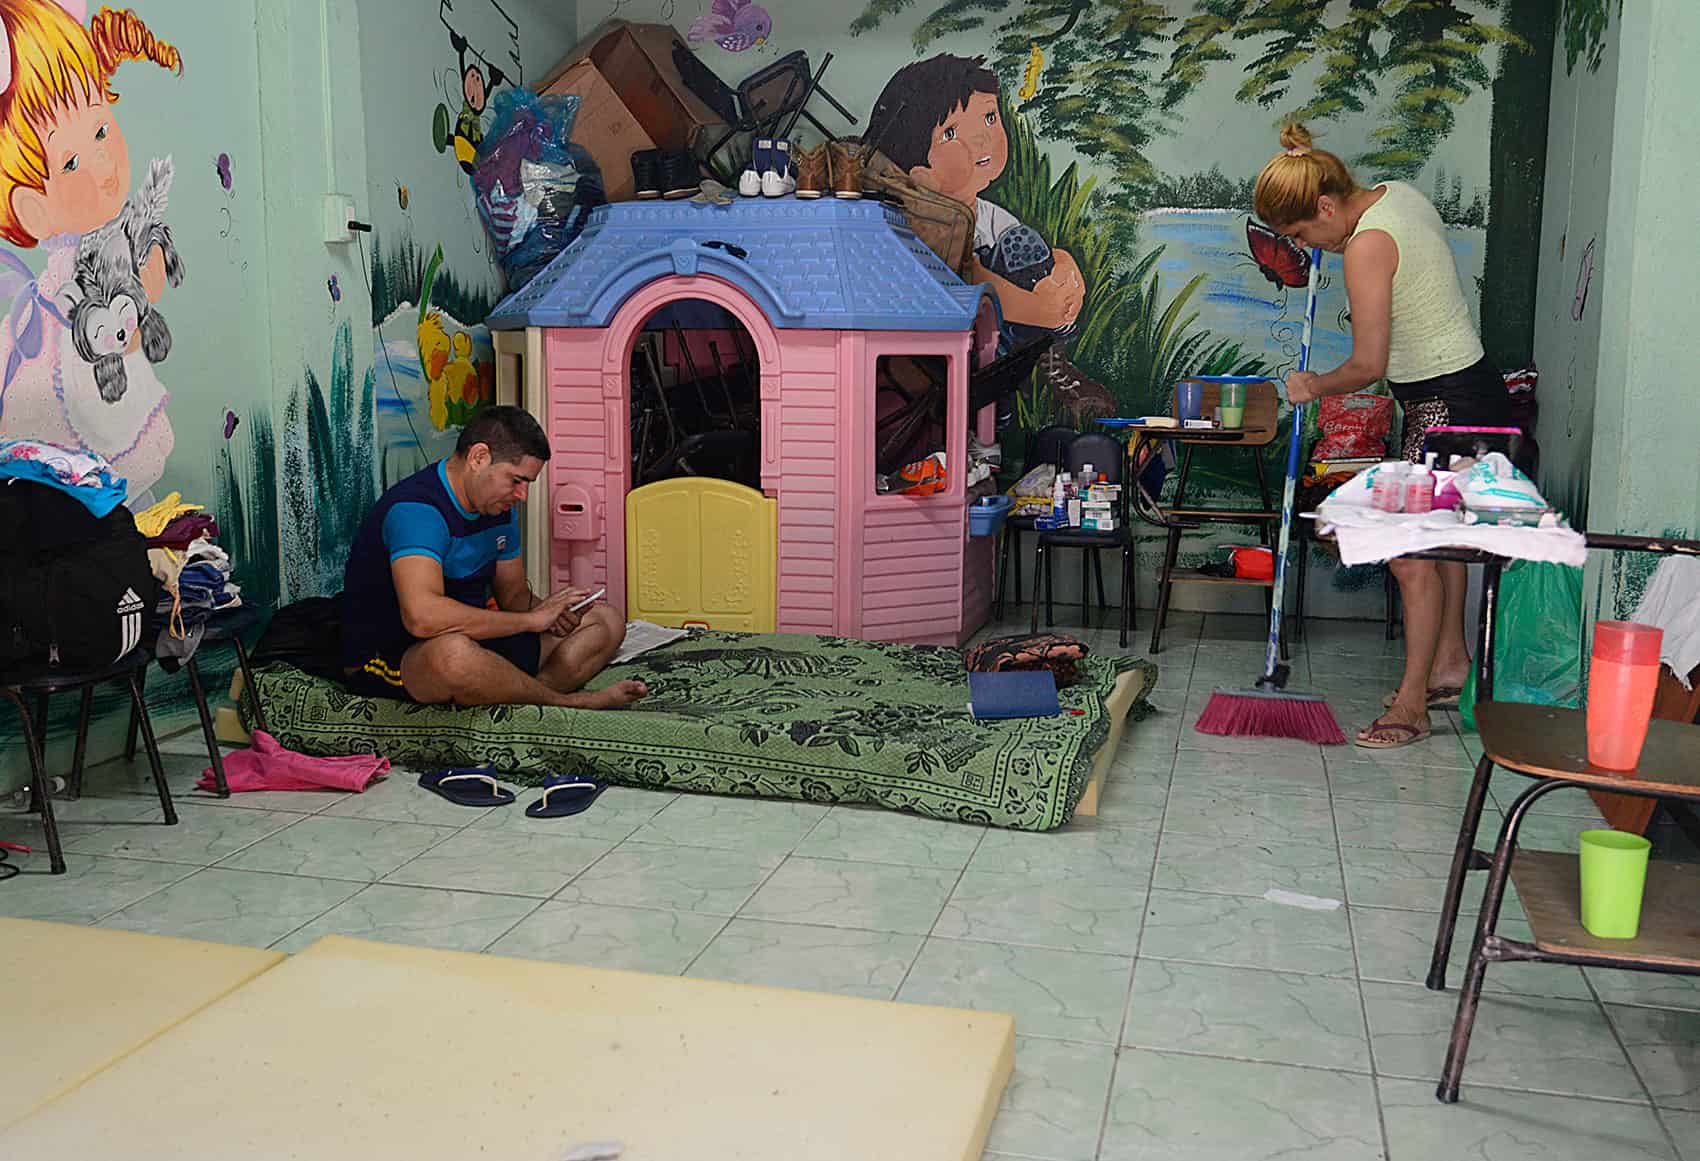 Cuban migrants shelter